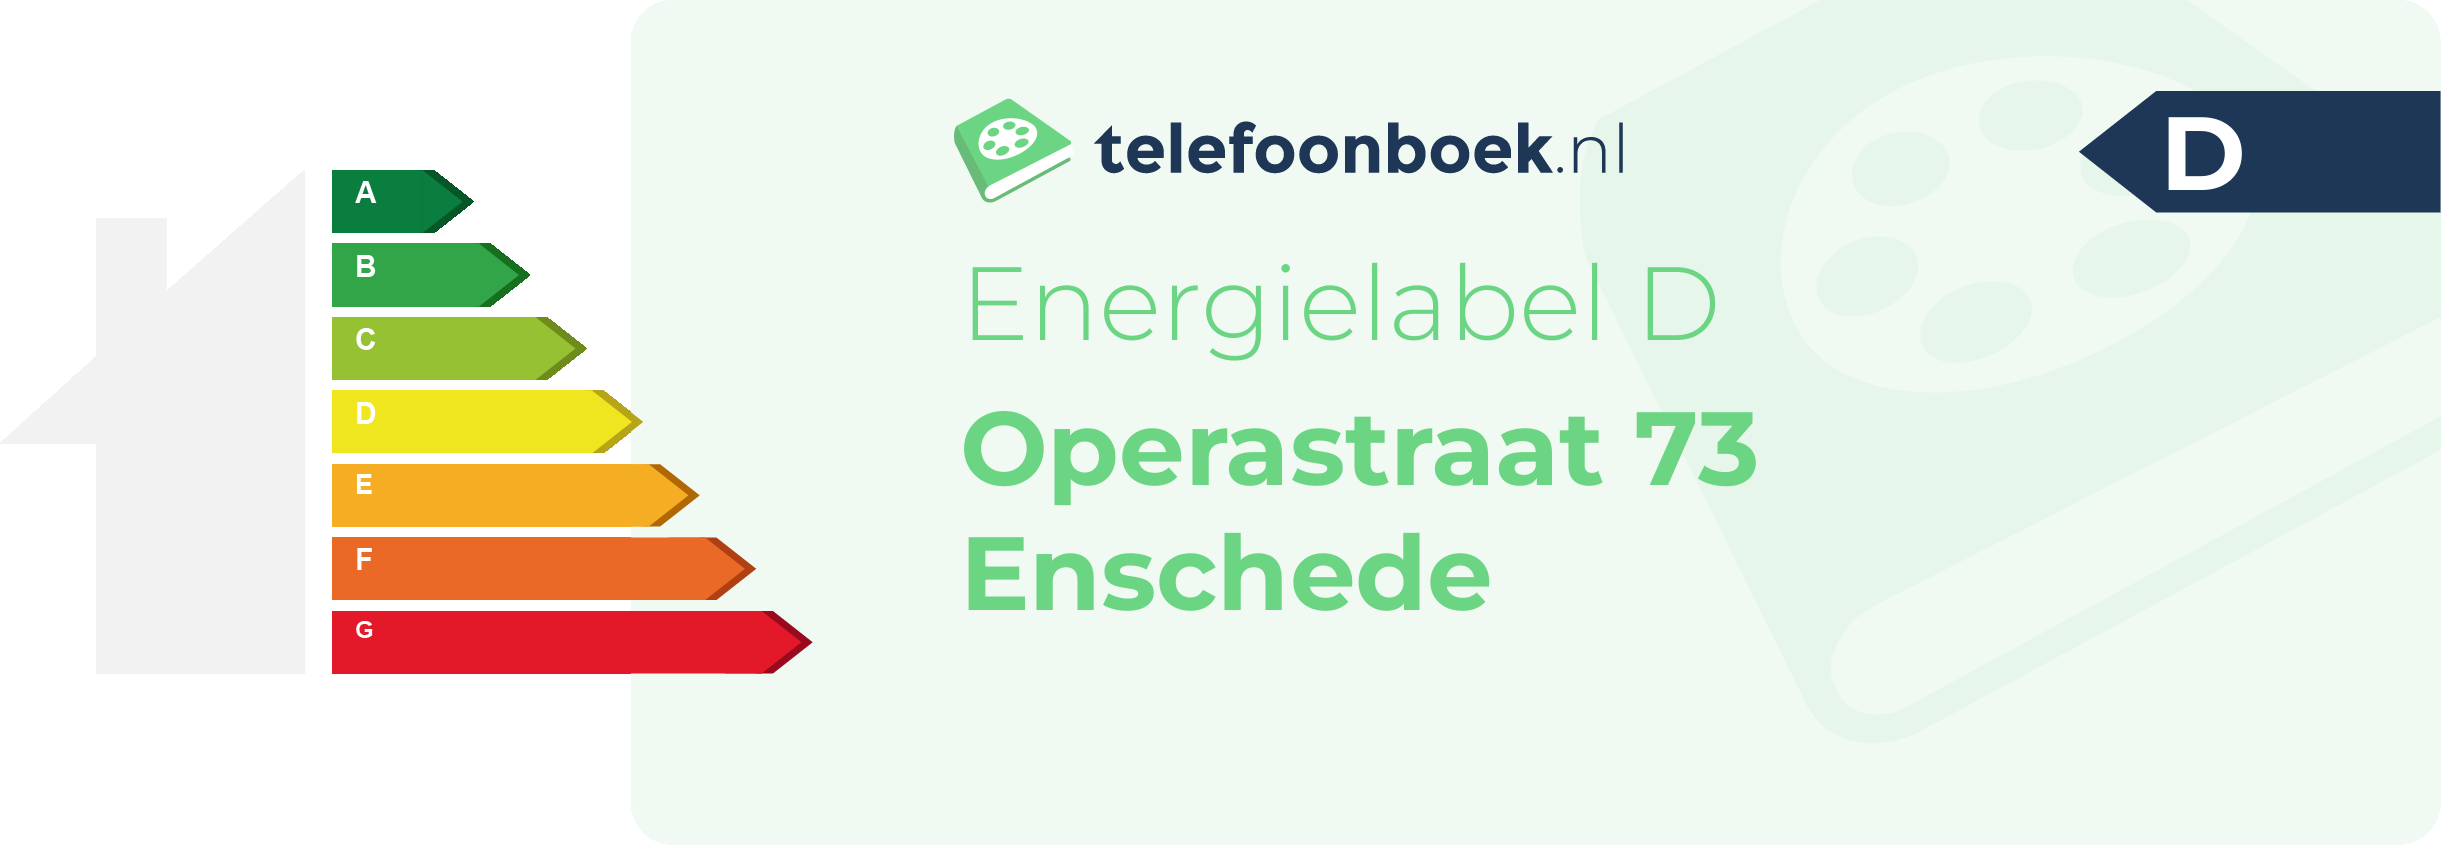 Energielabel Operastraat 73 Enschede